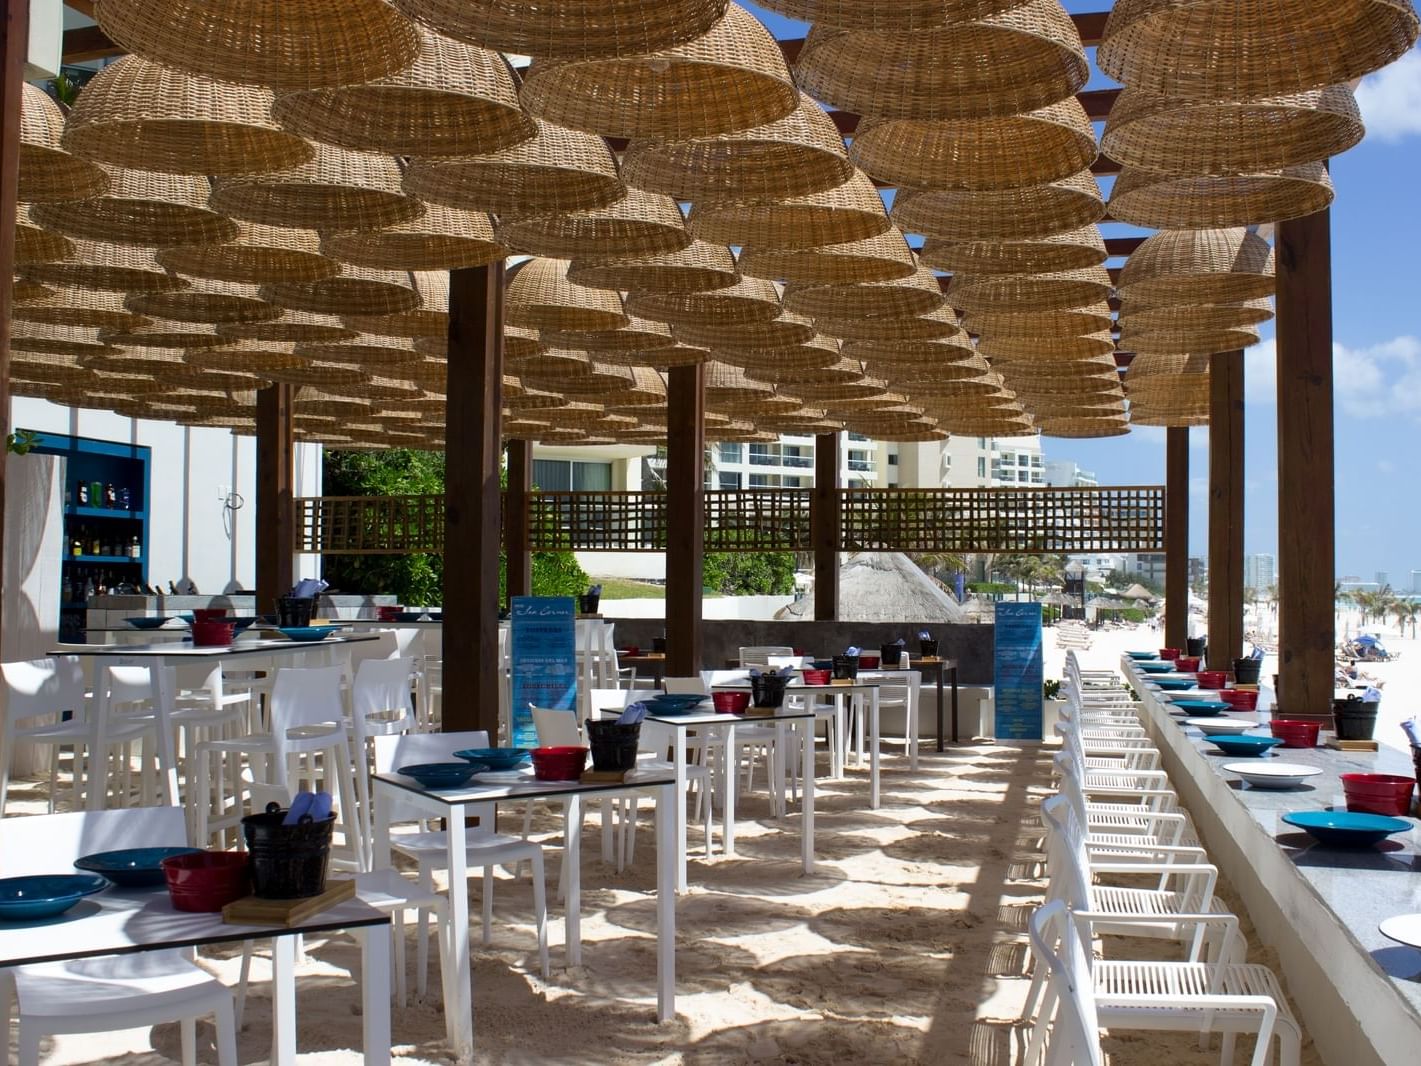 Sea Corner restaurant dining area on the beach at La Colección